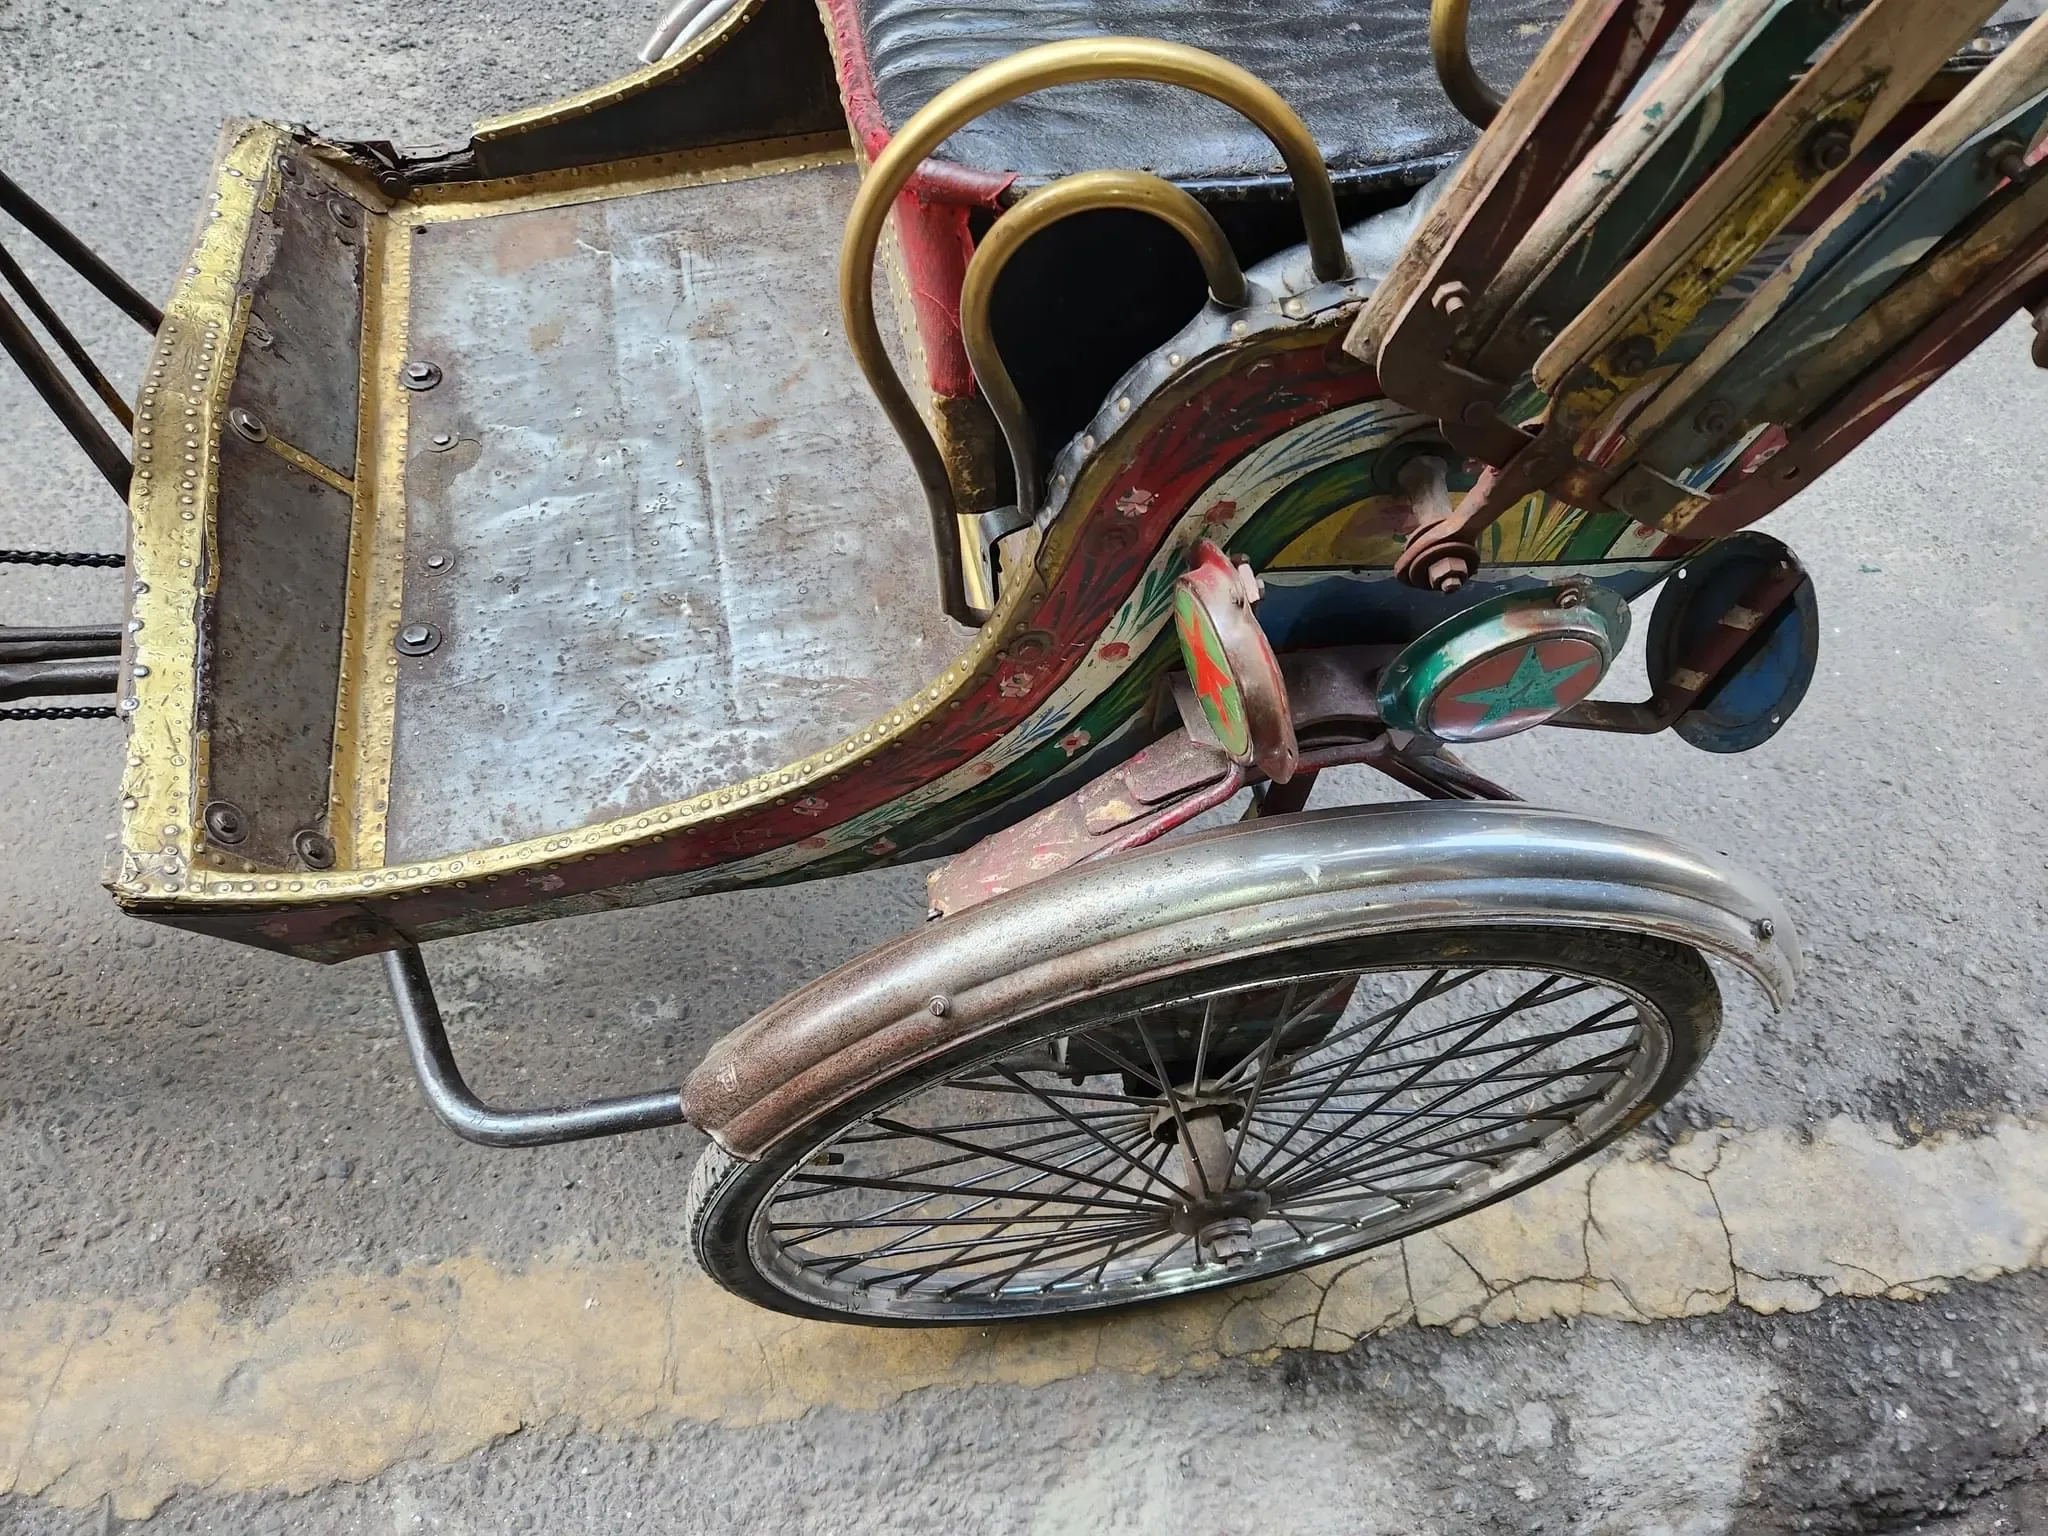 62 photos of Nepalese Cycle Rickshaws